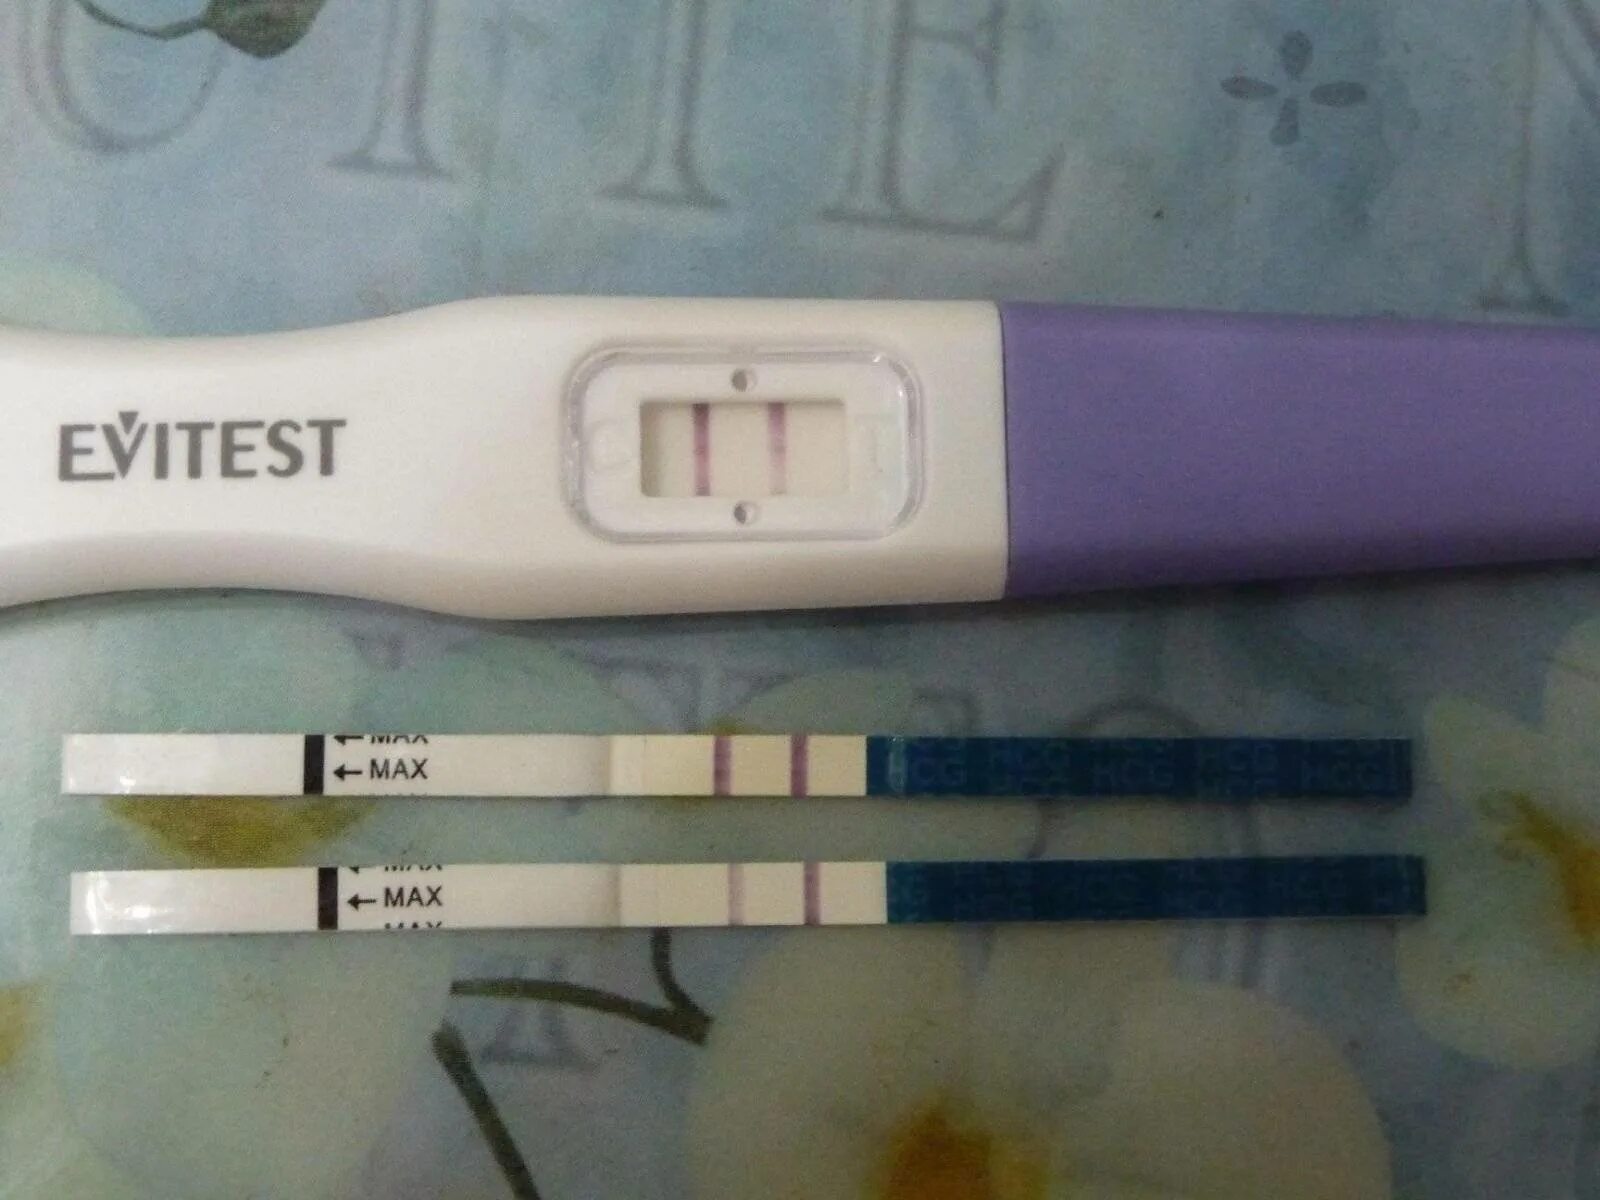 Без отрицательного теста. Тест на беременность 4 дня до задержки. Тест на беременность за 2-3 дня до задержки. Струйный тест эвитест за 3 дня до месячных. Тест на беременность 10 день цикла эвитест.